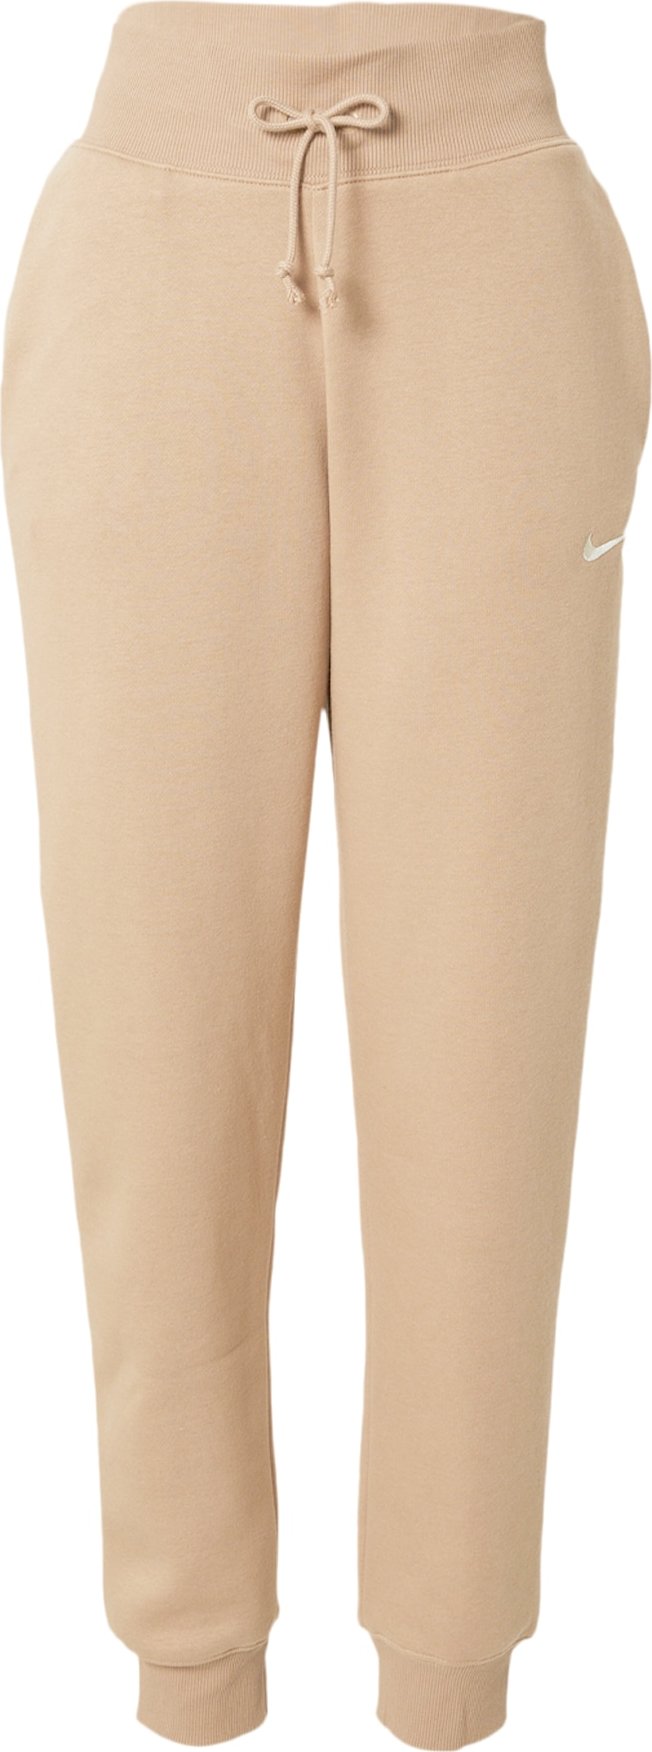 Kalhoty Nike Sportswear cappuccino / bílá